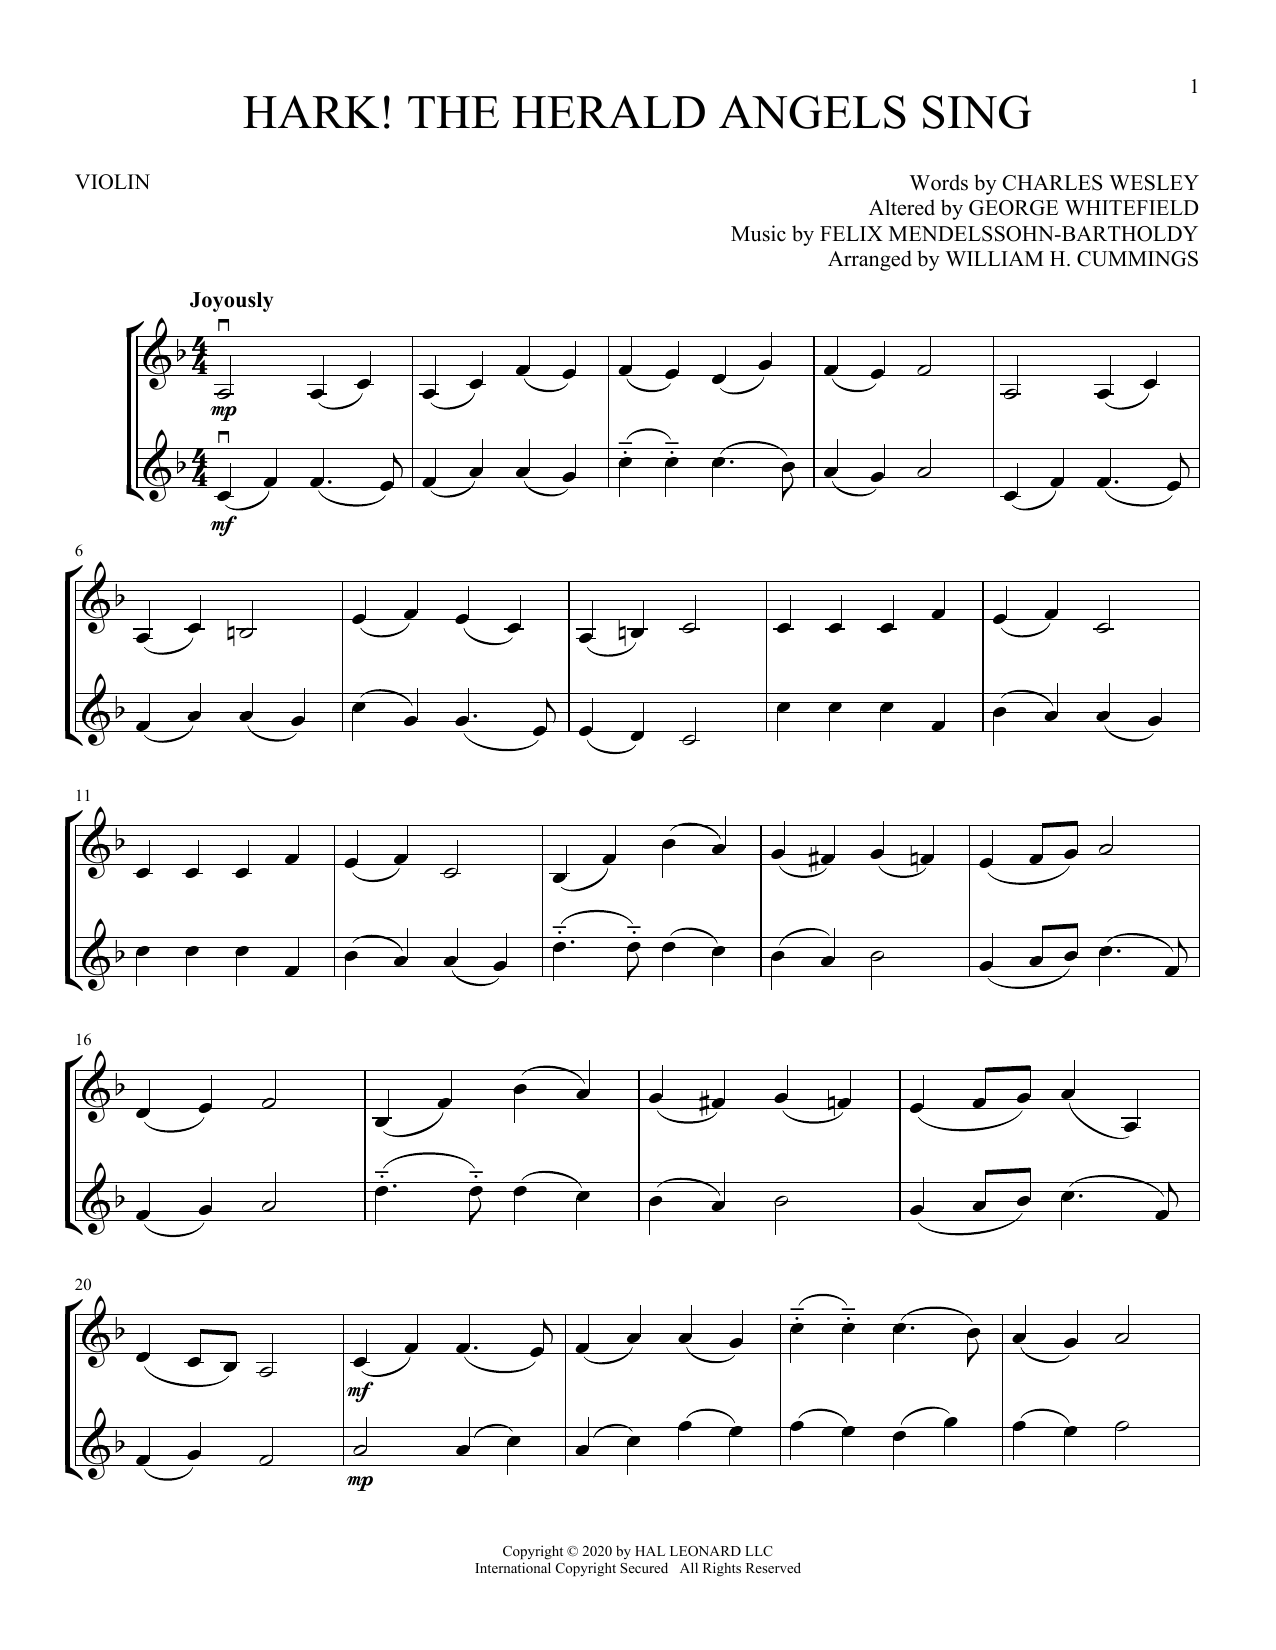 Download Felix Mendelssohn-Bartholdy Hark! The Herald Angels Sing Sheet Music